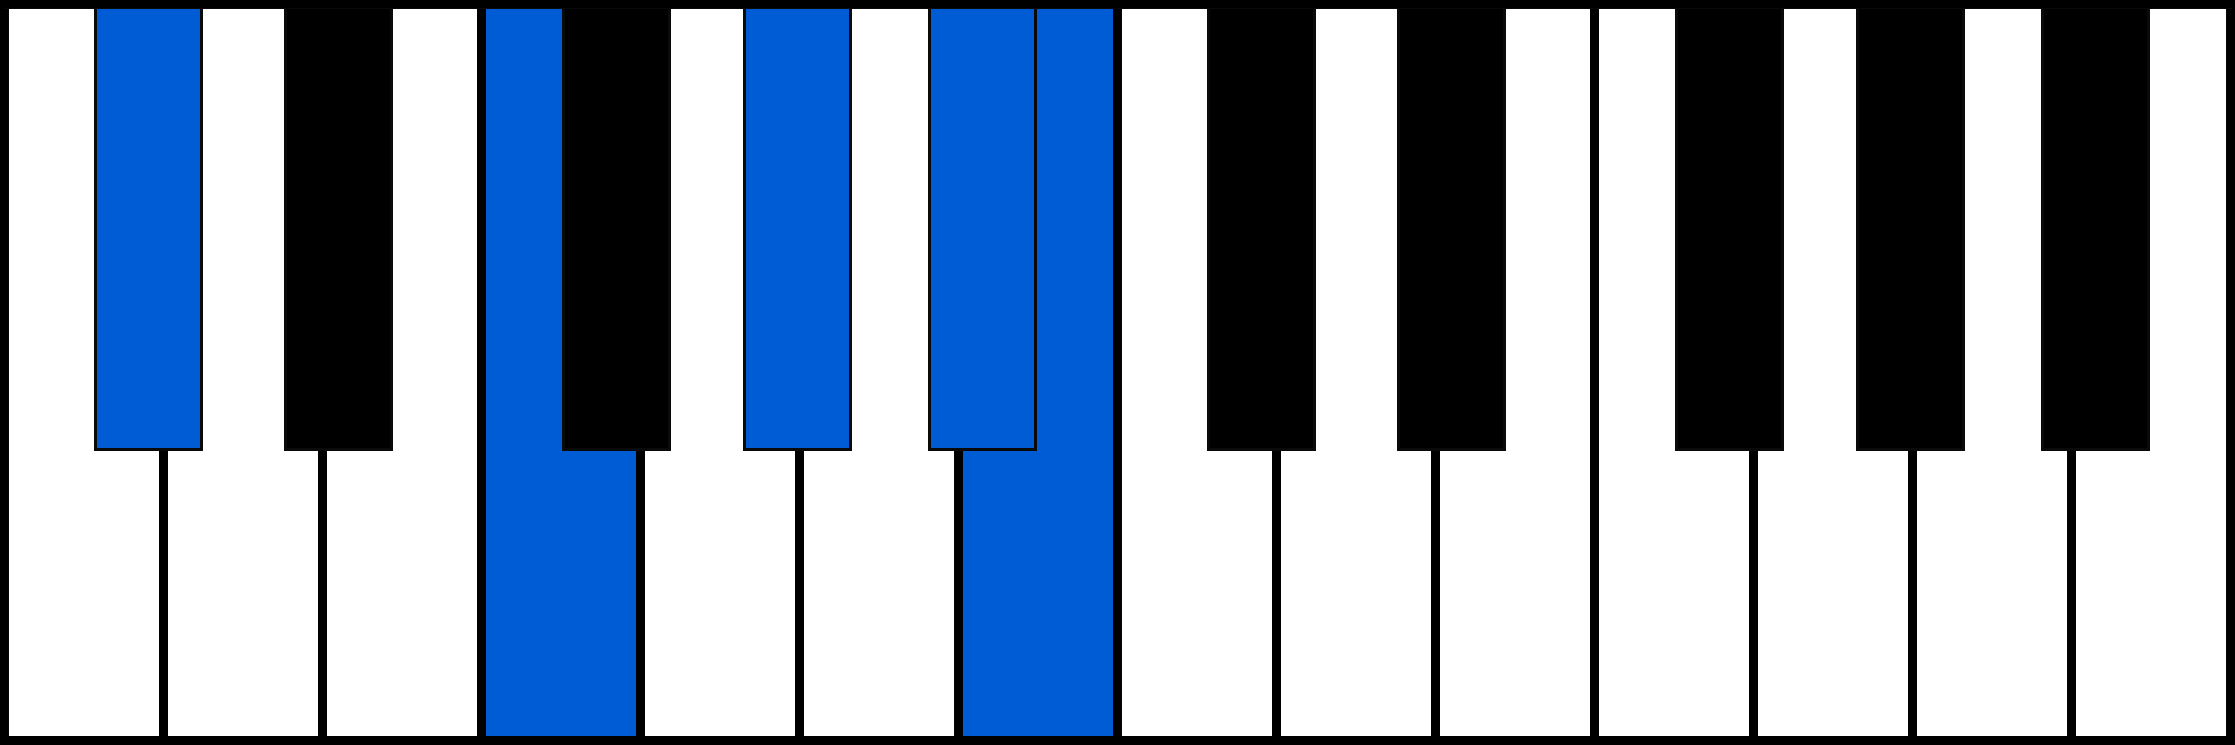 C#7/6 piano chord